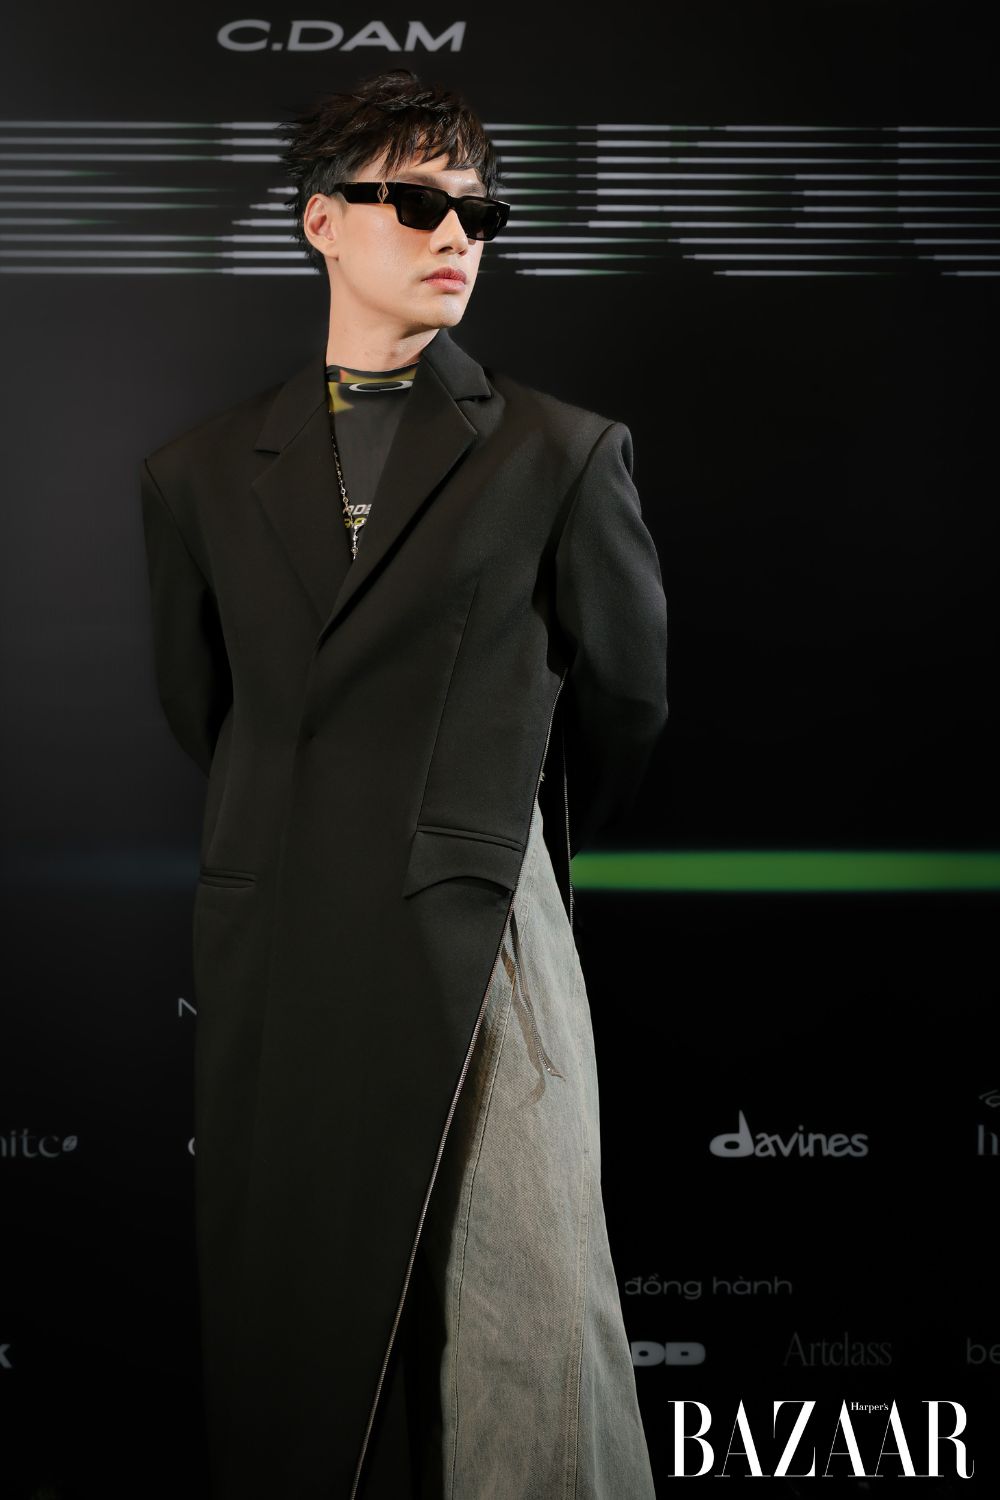 Diện trang phục C.Dam, NTK Lý Quí Khánh phối “racer jumpsuit” cùng thiết kế áo blazer dáng dài có kết cấu mở khoá chéo từ sườn ra phía trước.